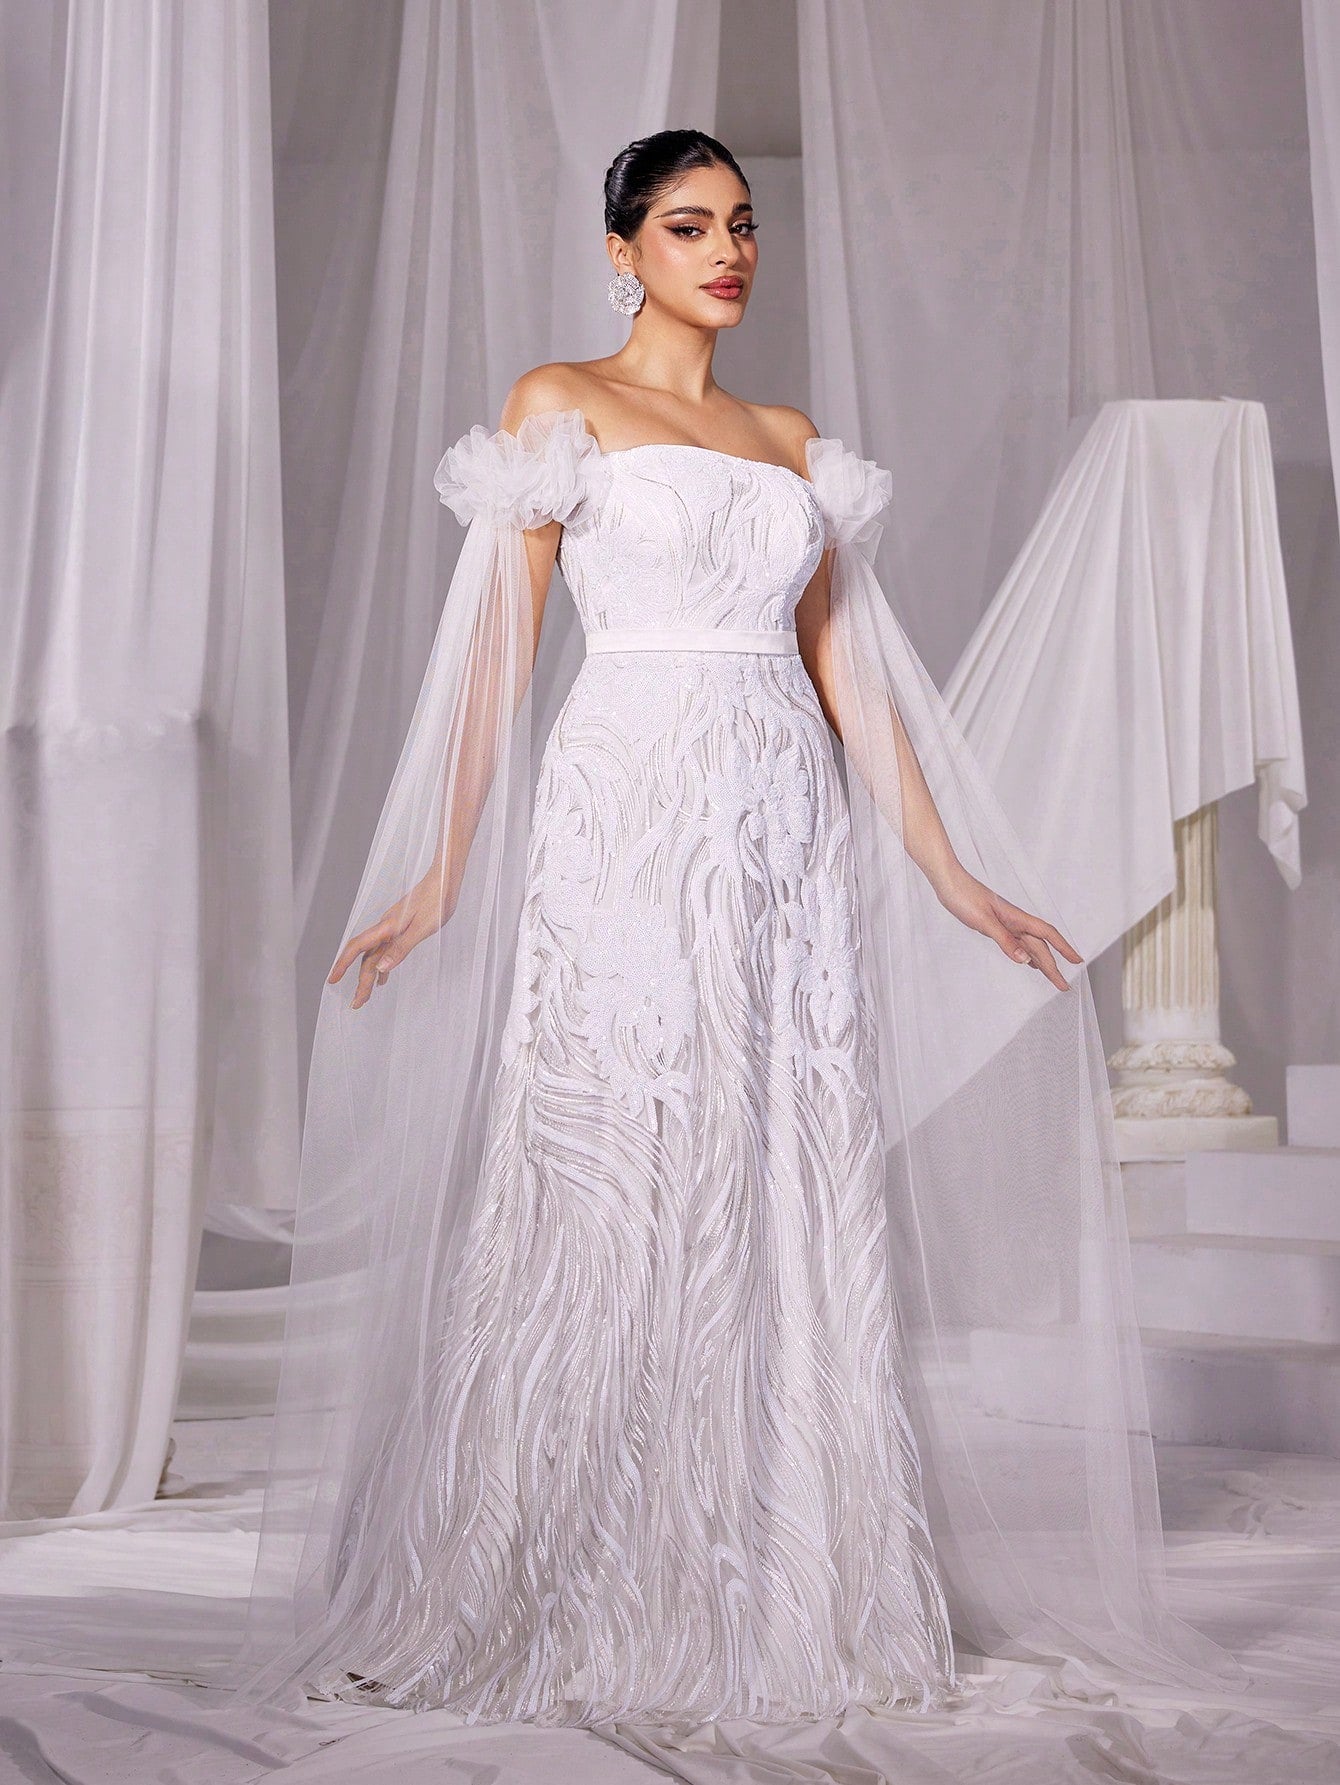 Floral Sequin Off-Shoulder Wedding Dress with Elegant Cloak Sleeves